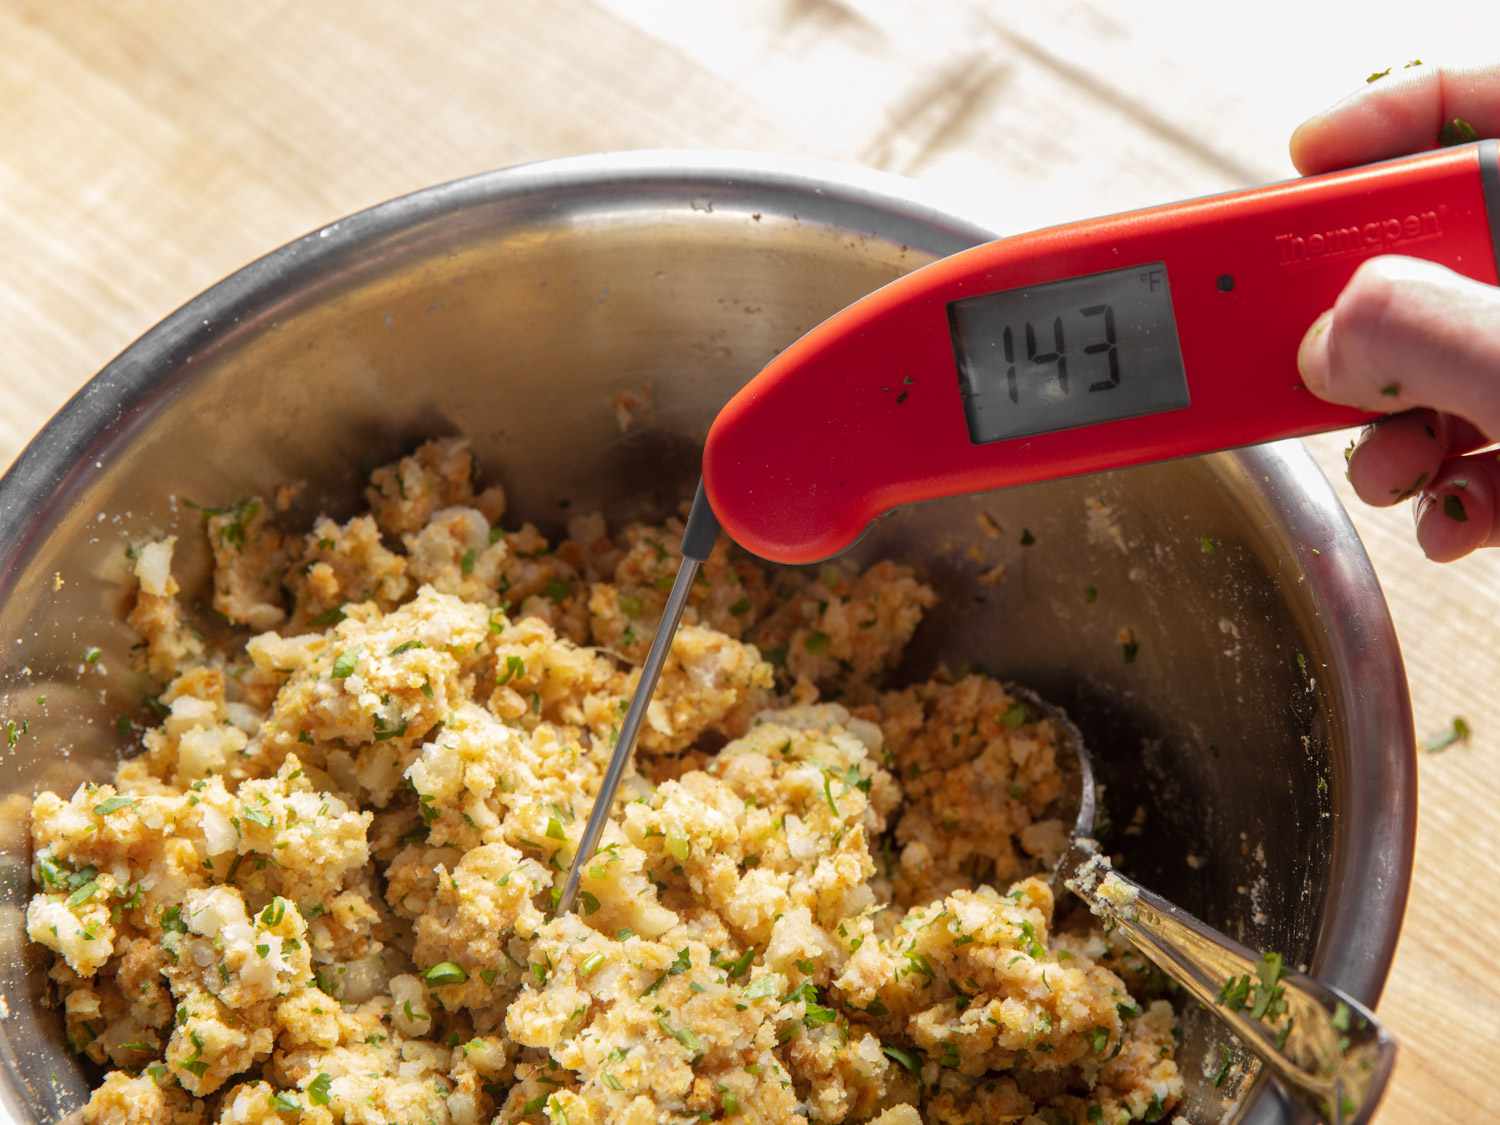 即时读数温度计插入香料土豆混合物混合后，说明它是140Â°F以上